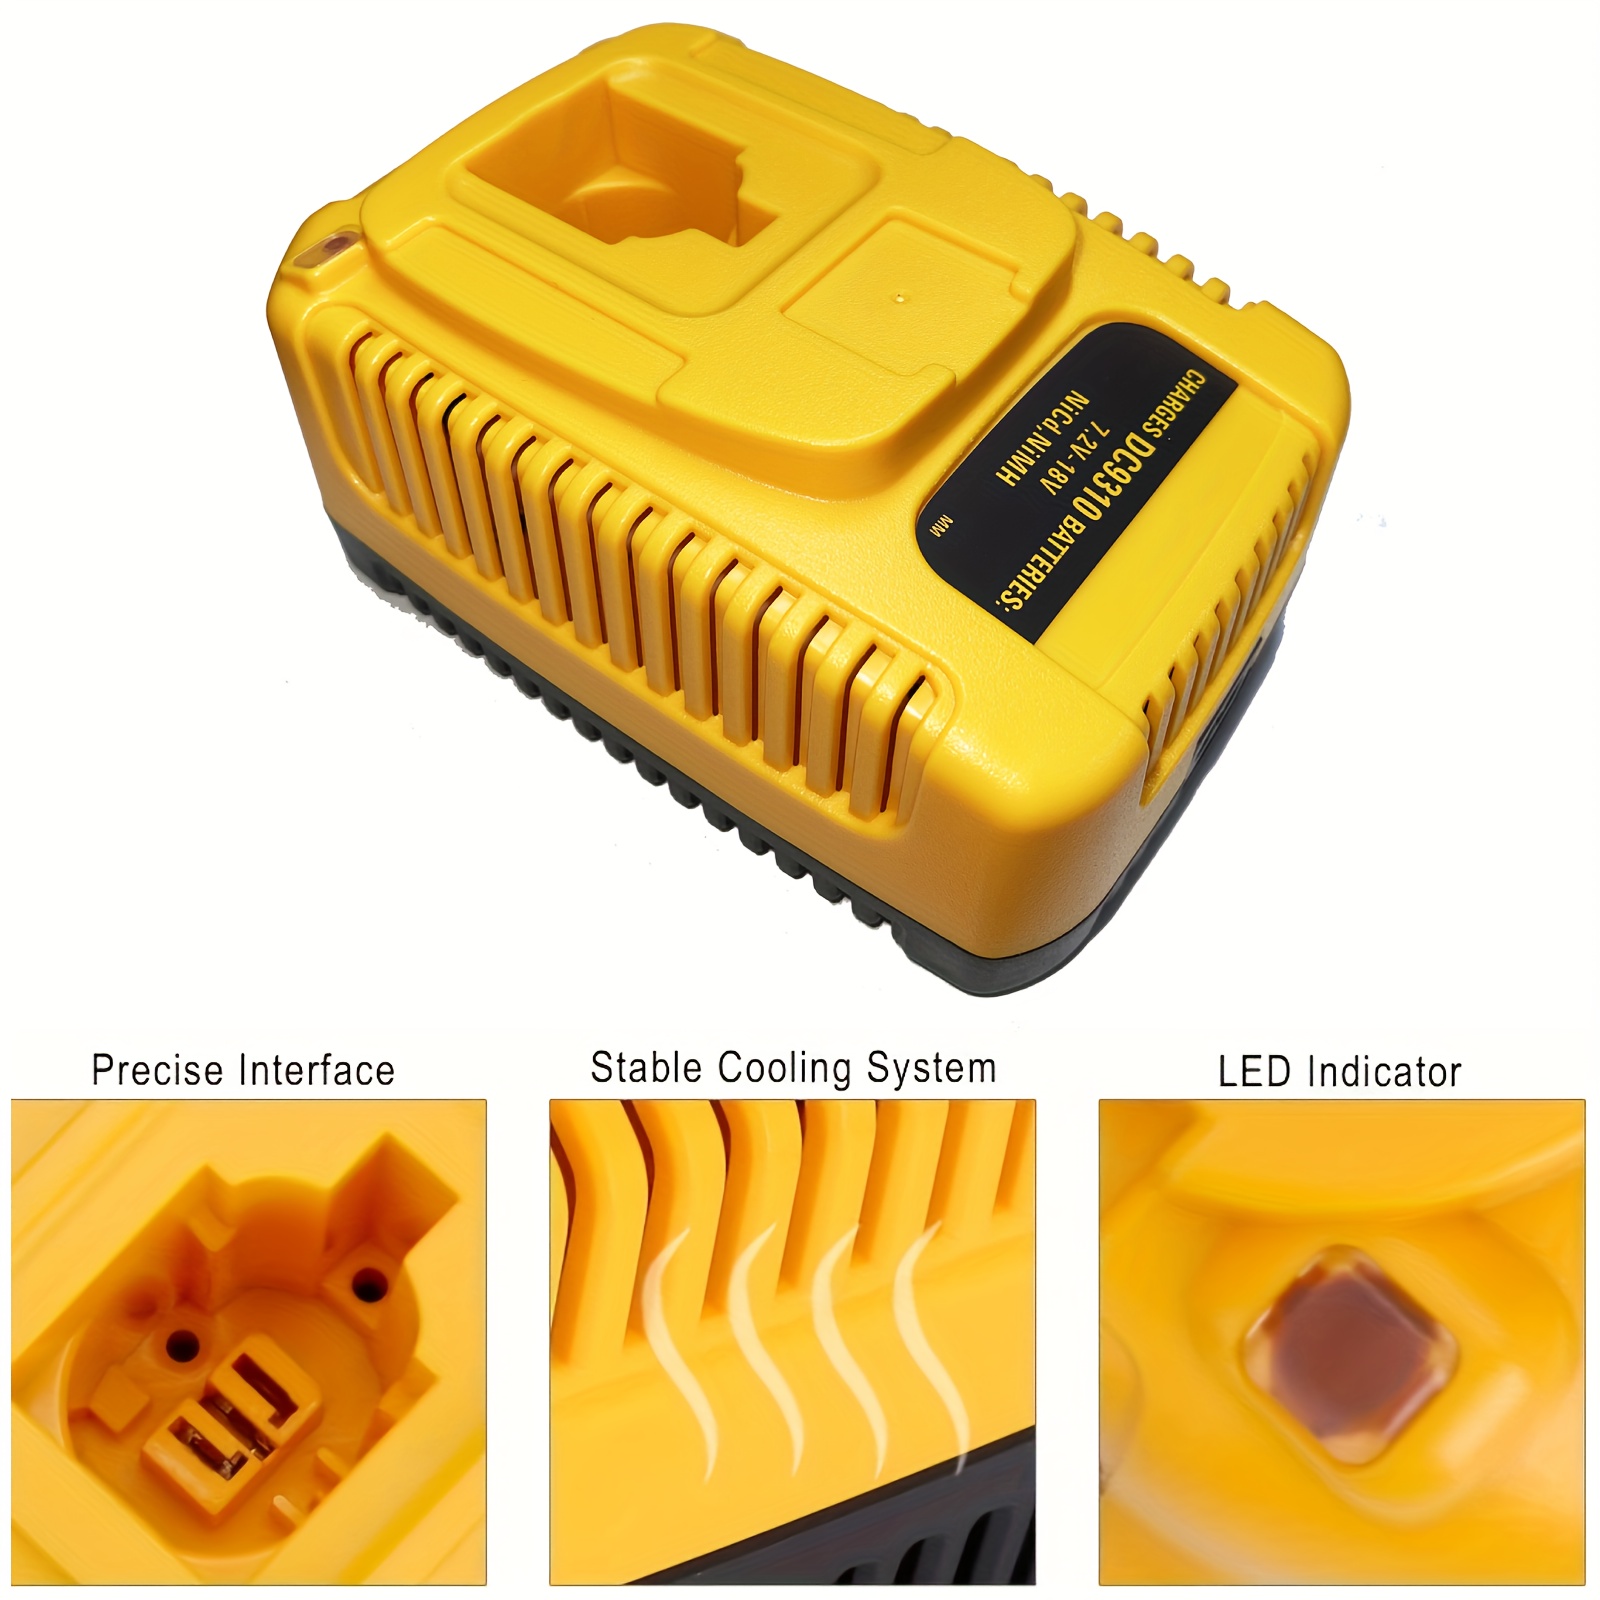 18V XRP Battery Charger Compatible for DEWALT 7.2V-18V NiCd NiMh Battery  DC9096 DC9098 DC9099 DC9091 DC9071 DE9057 DW9096 DW9094 DW9072 (Yellow) 